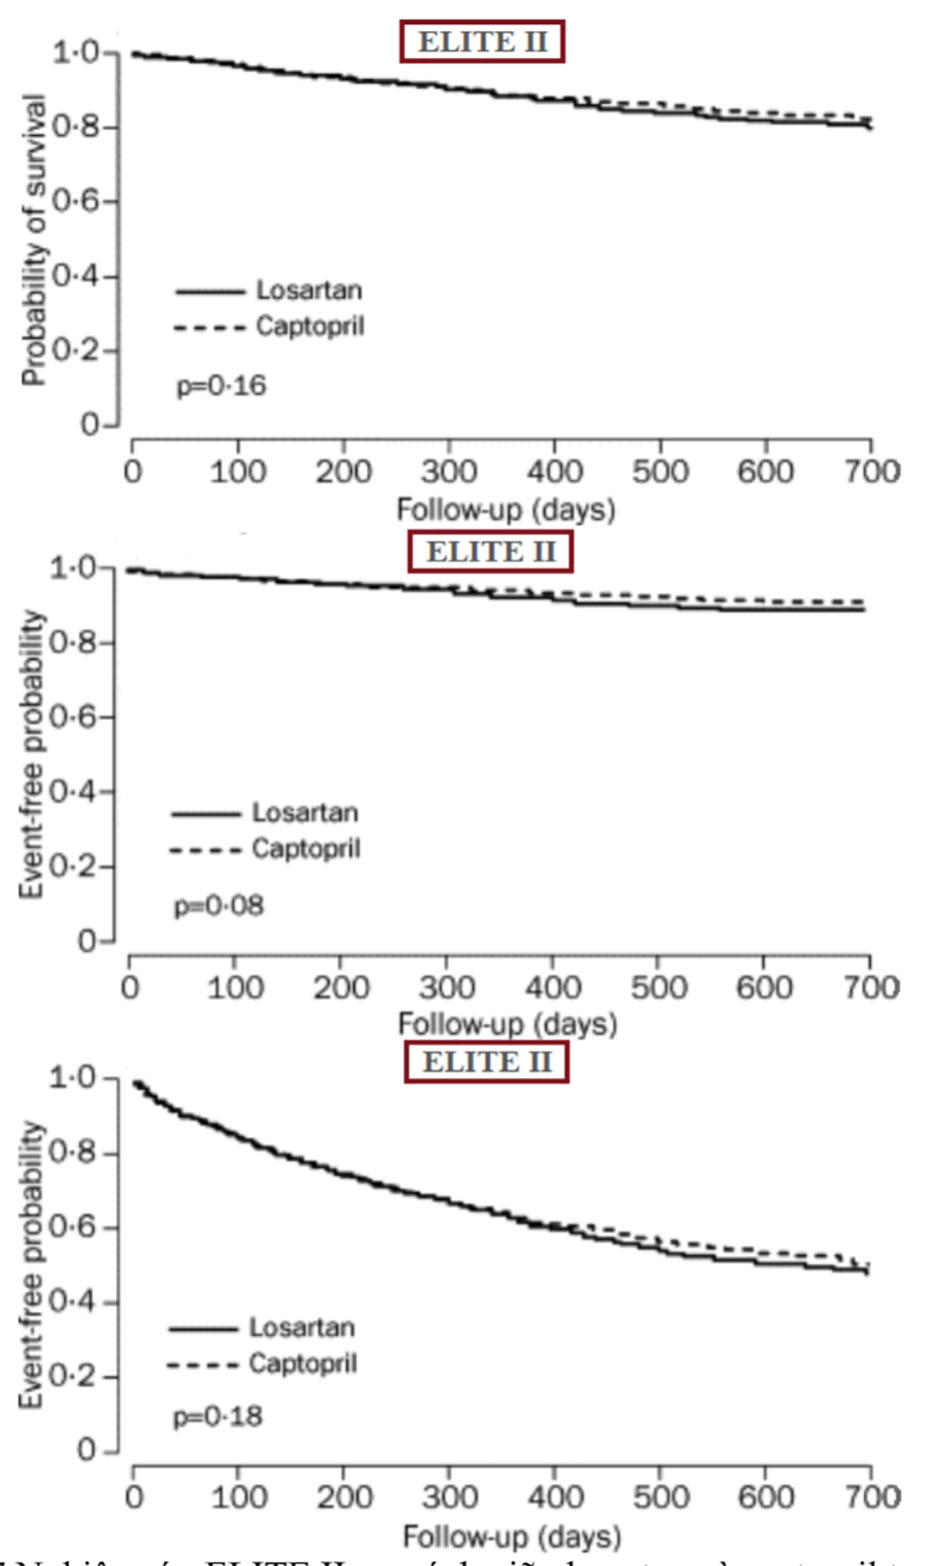 Nghiên cứu ELITE II, so sánh giữa losartan và captopril trong điều trị suy tim